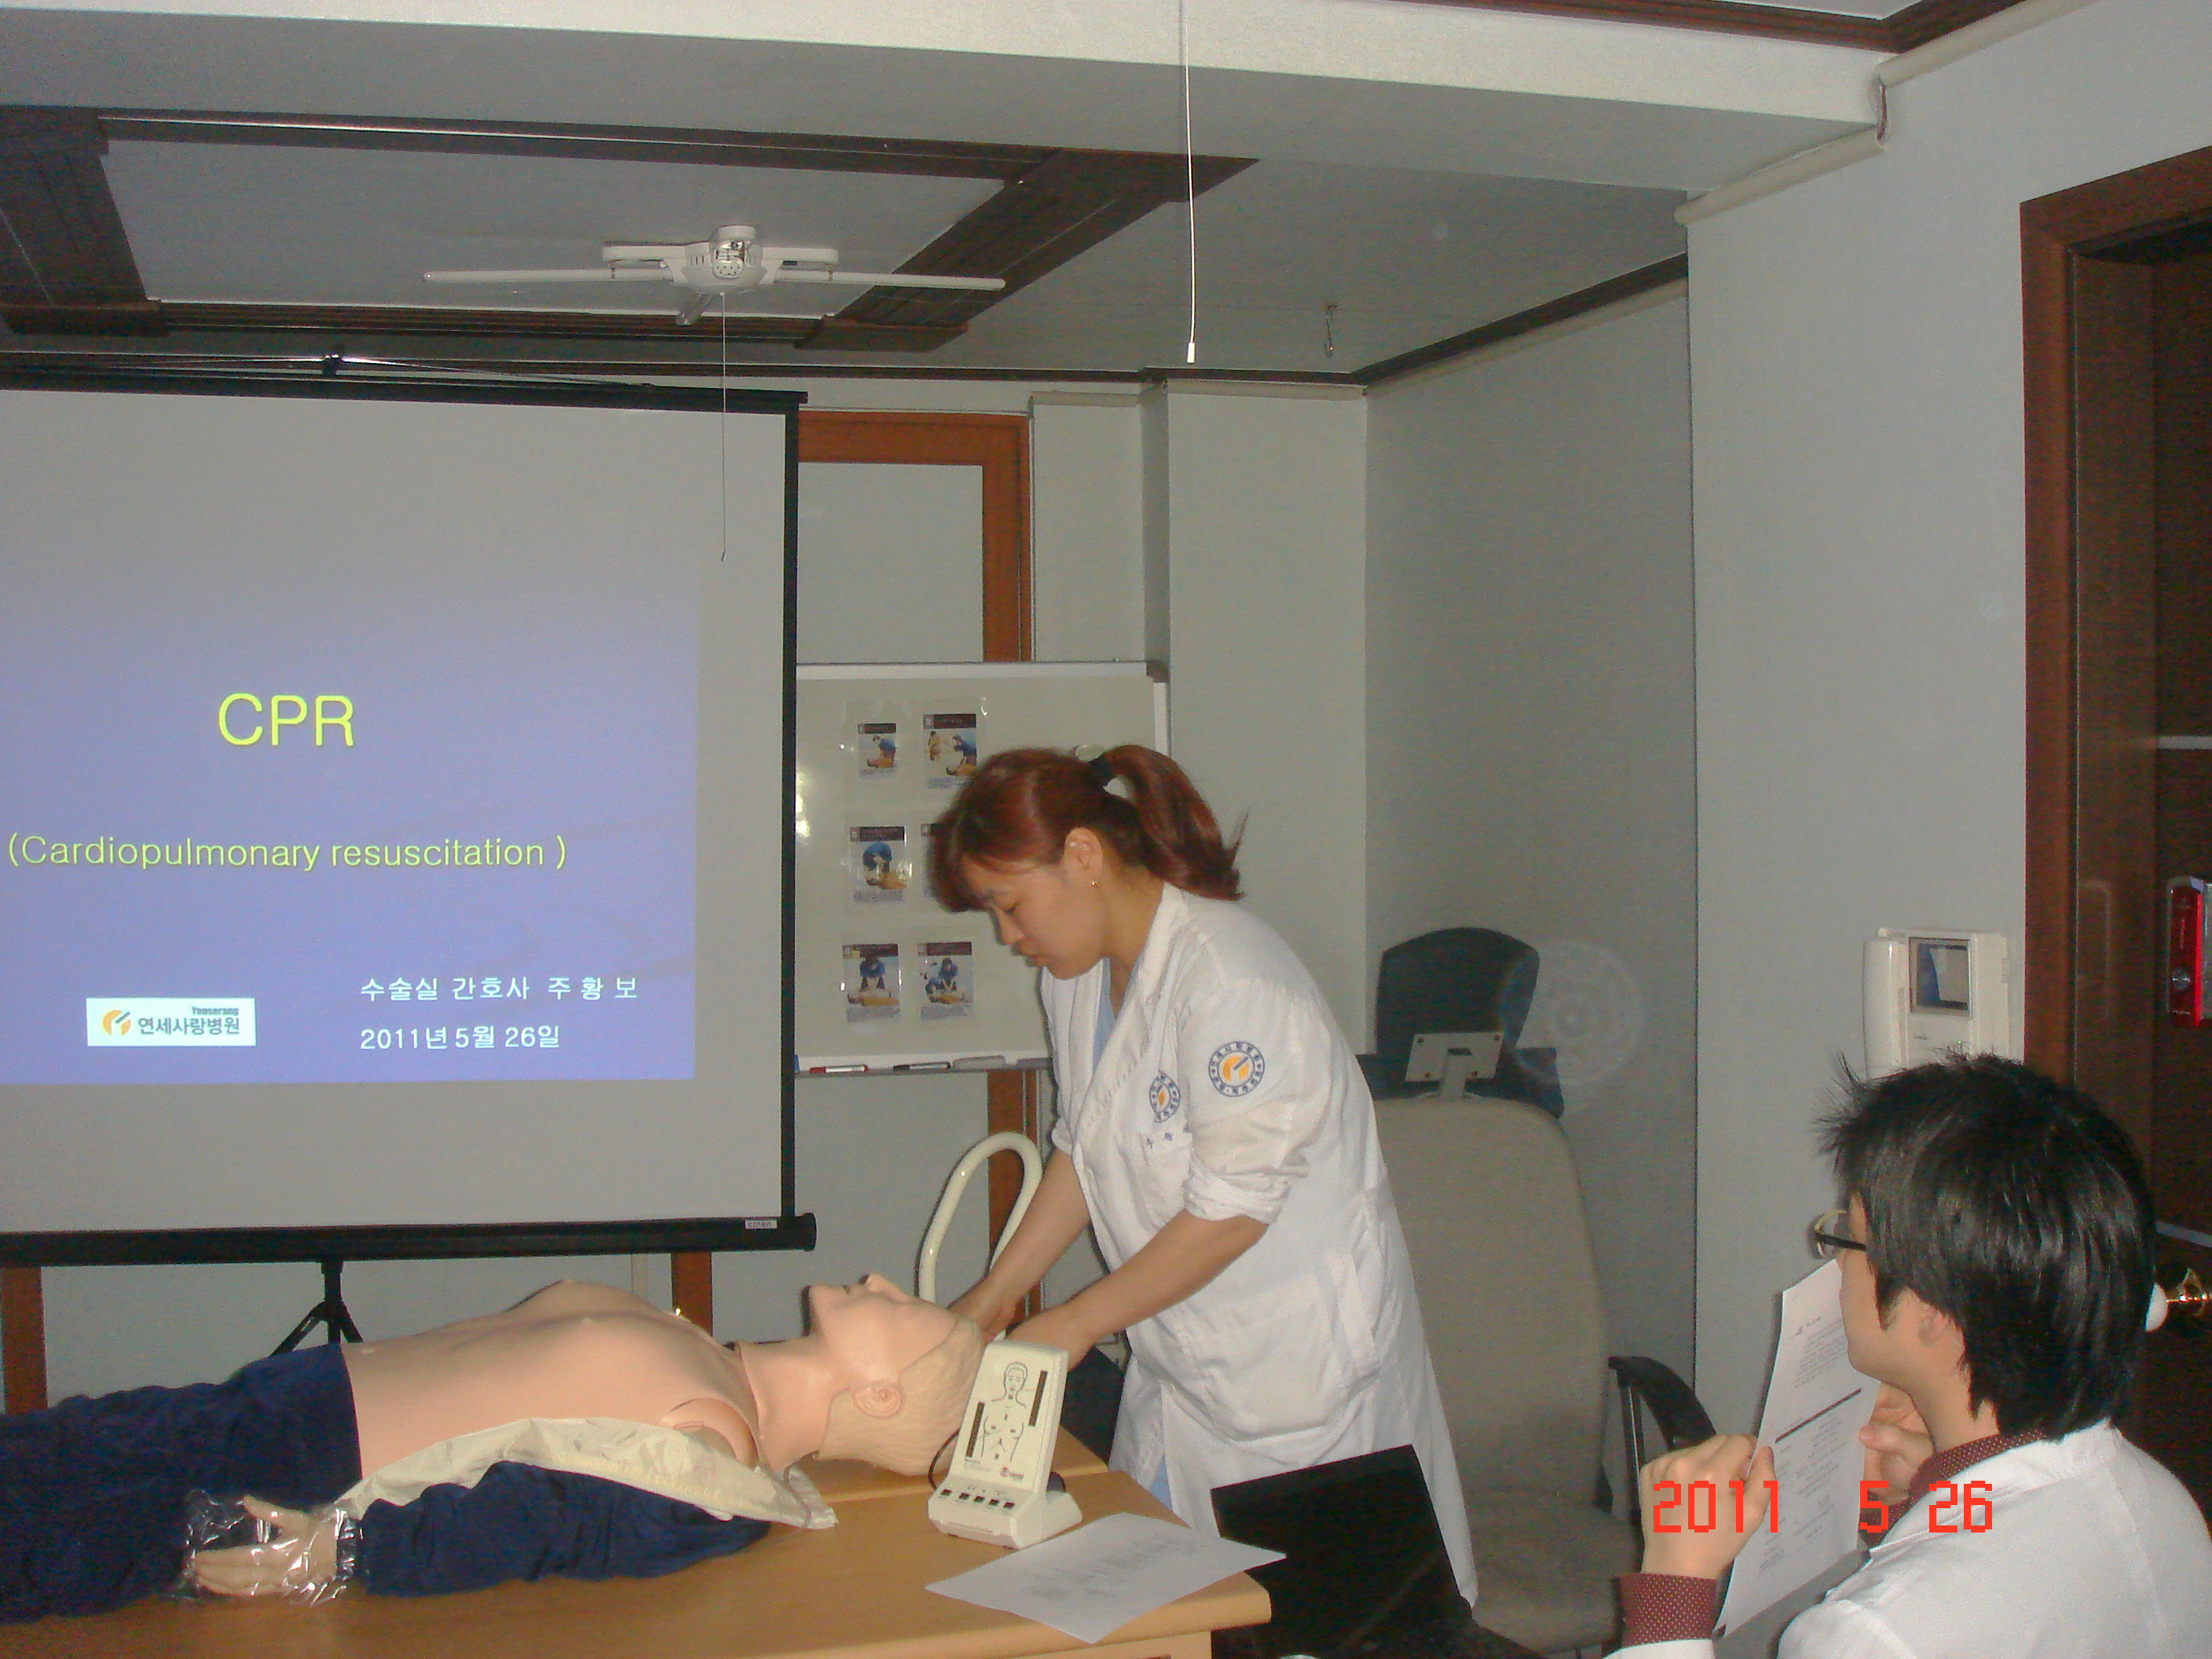 [강북점] 2011년 5월 26일 - 전직원 직무교육 실시 (심폐소생술, CPR) 게시글의 3번째 첨부파일입니다.